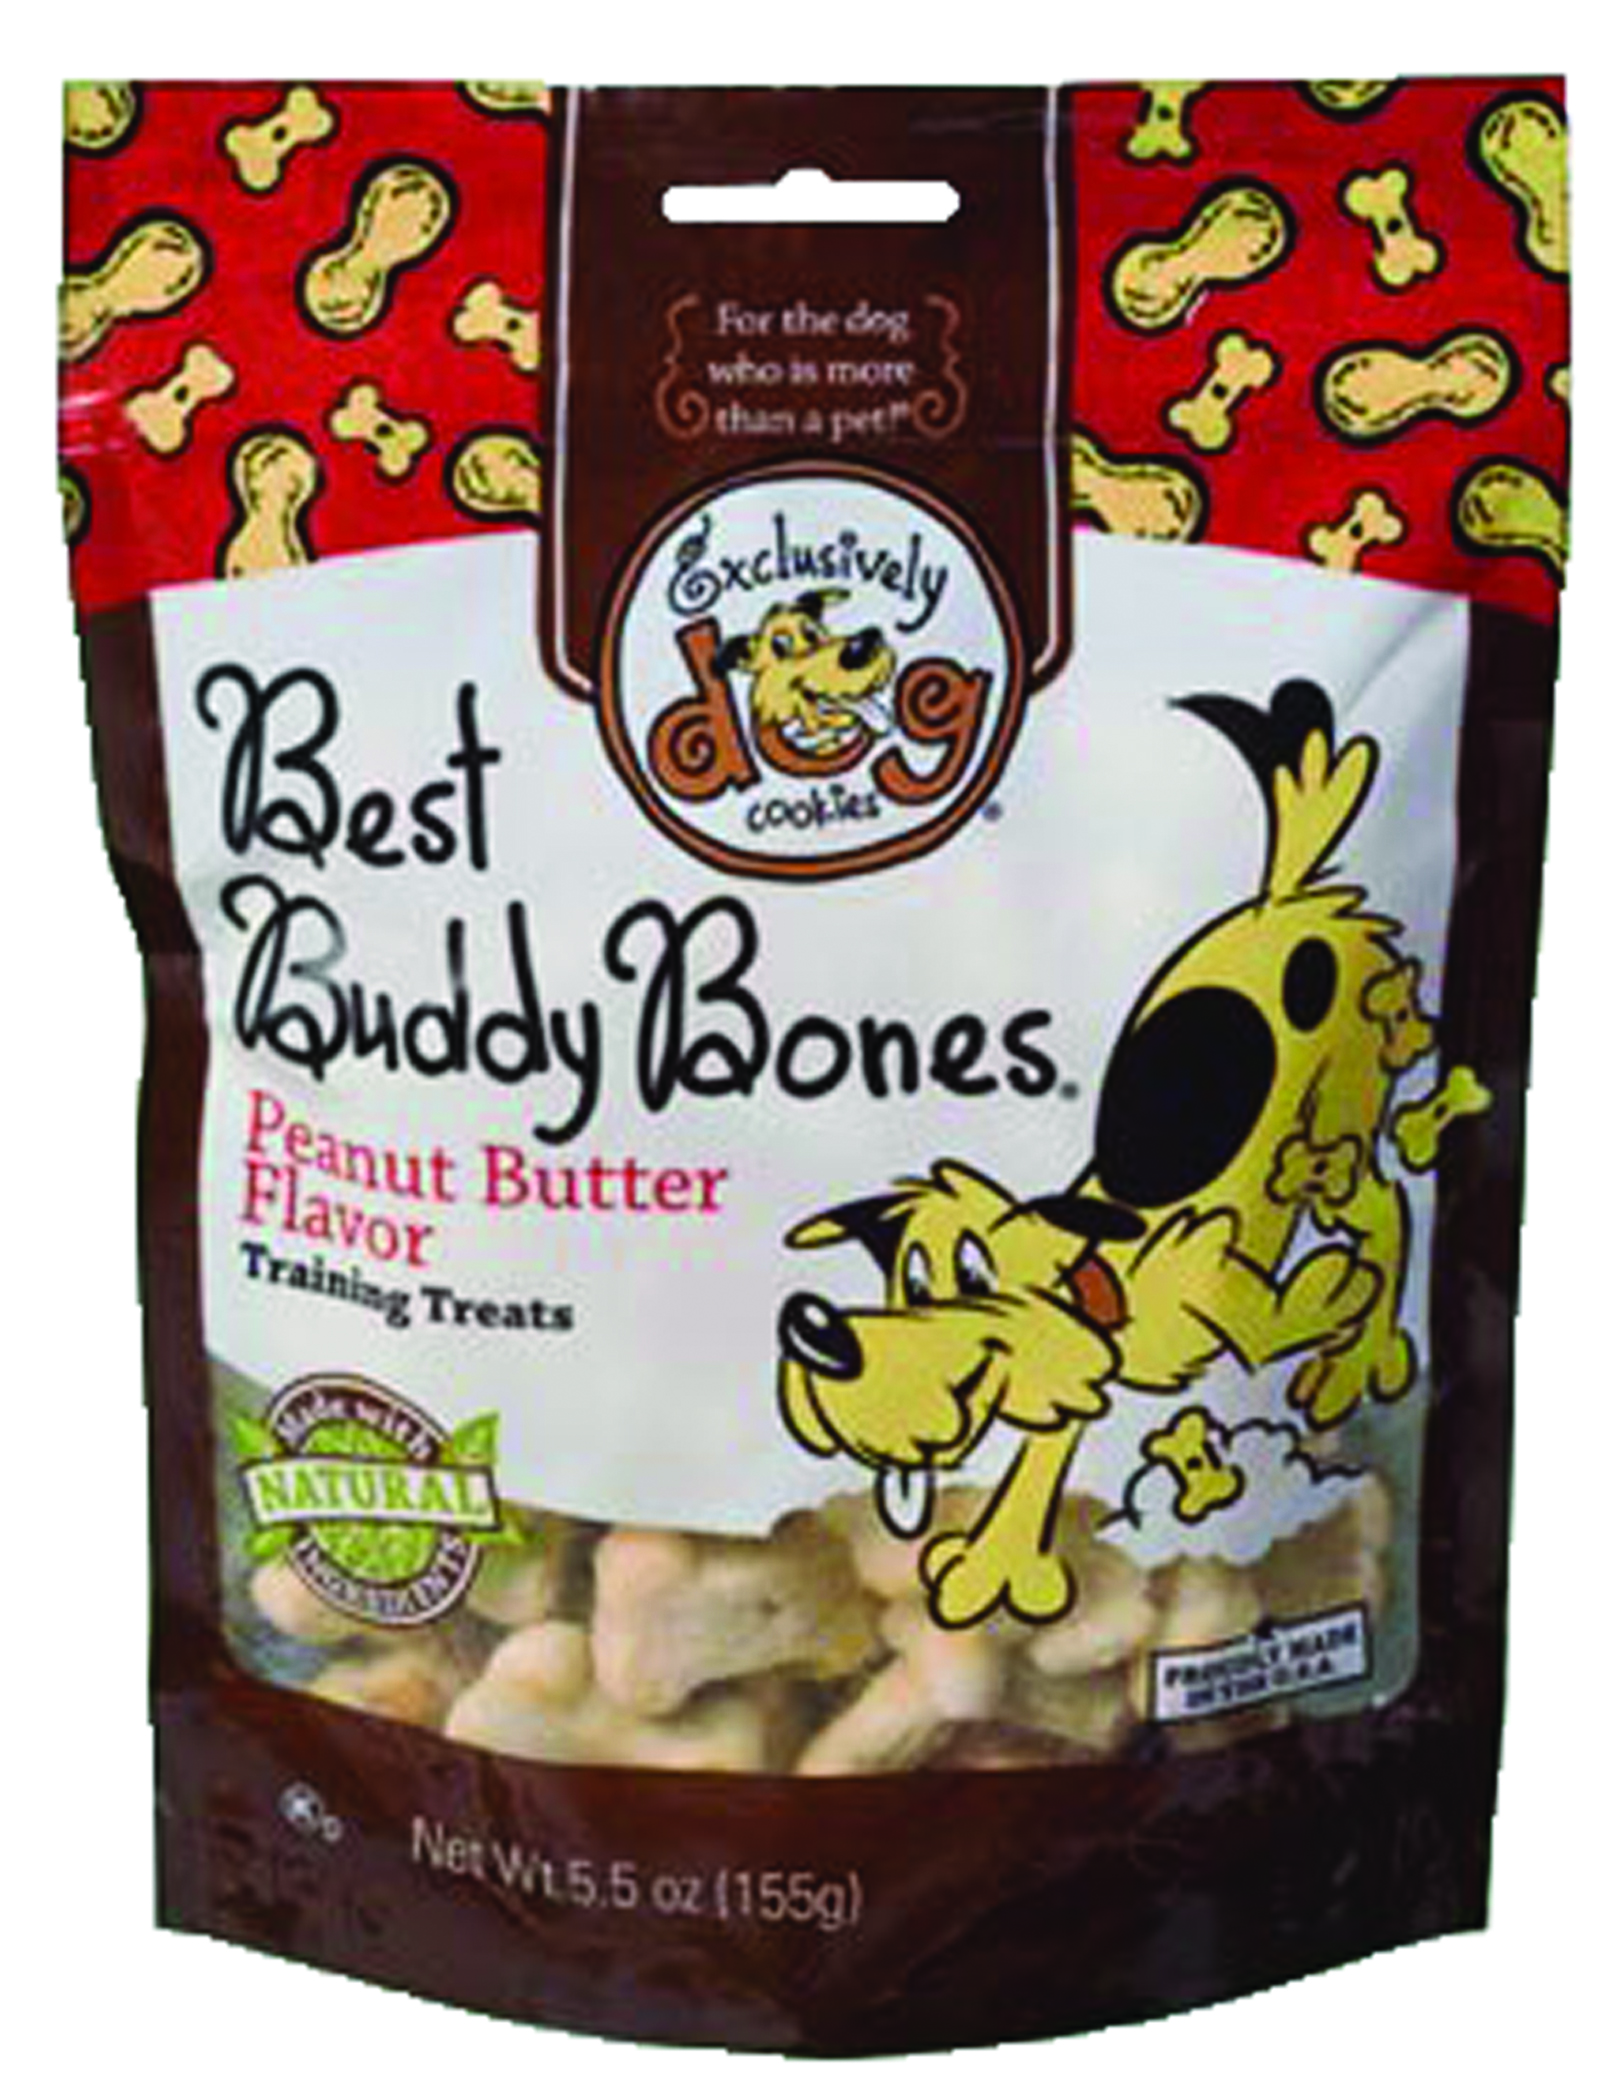 Best Buddy Bones Pt Peanut butter